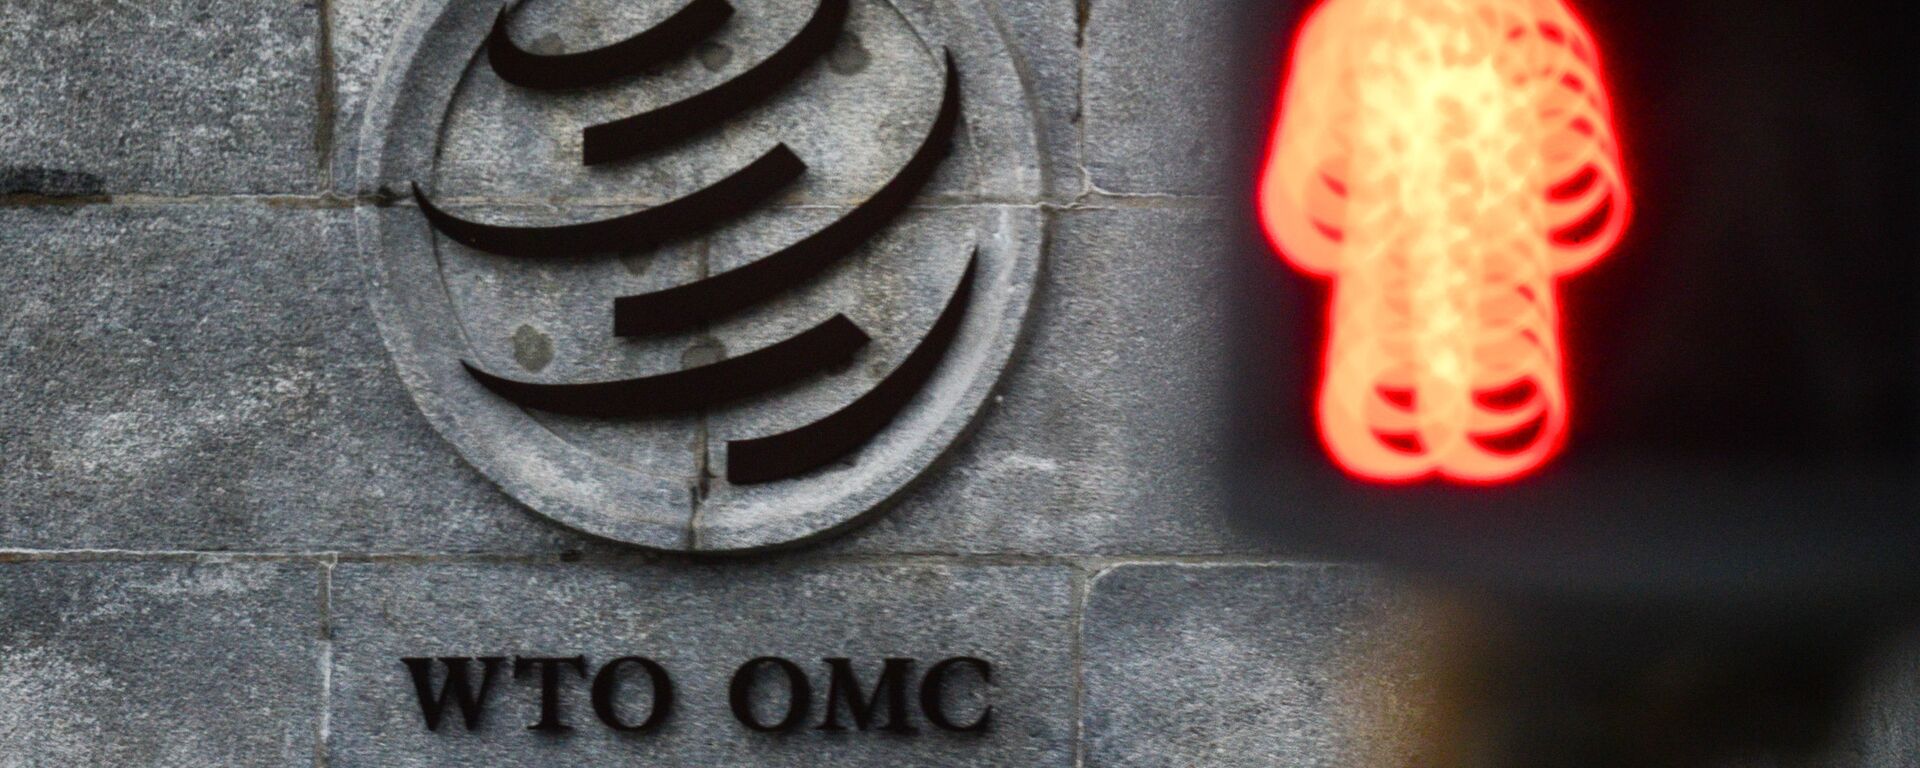 El logo de la OMC sobre su sede en Ginebra - Sputnik Mundo, 1920, 07.05.2021